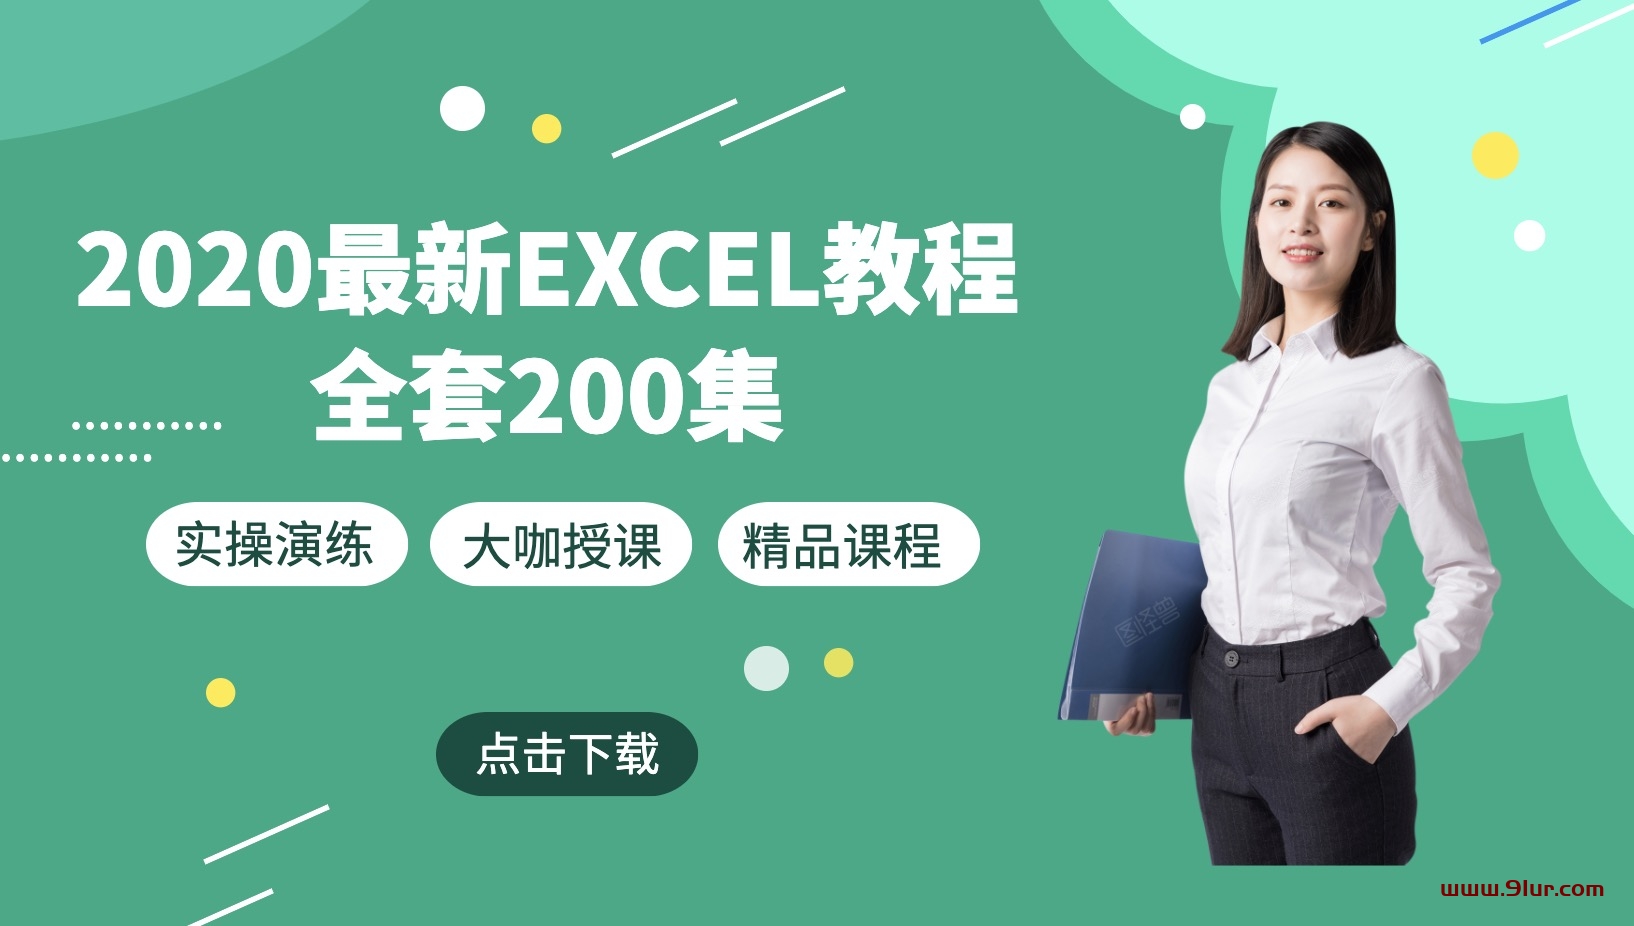 2020年最新Excel教程全套200集#Excel视频教程百度网盘下载#2020Excel视频教程